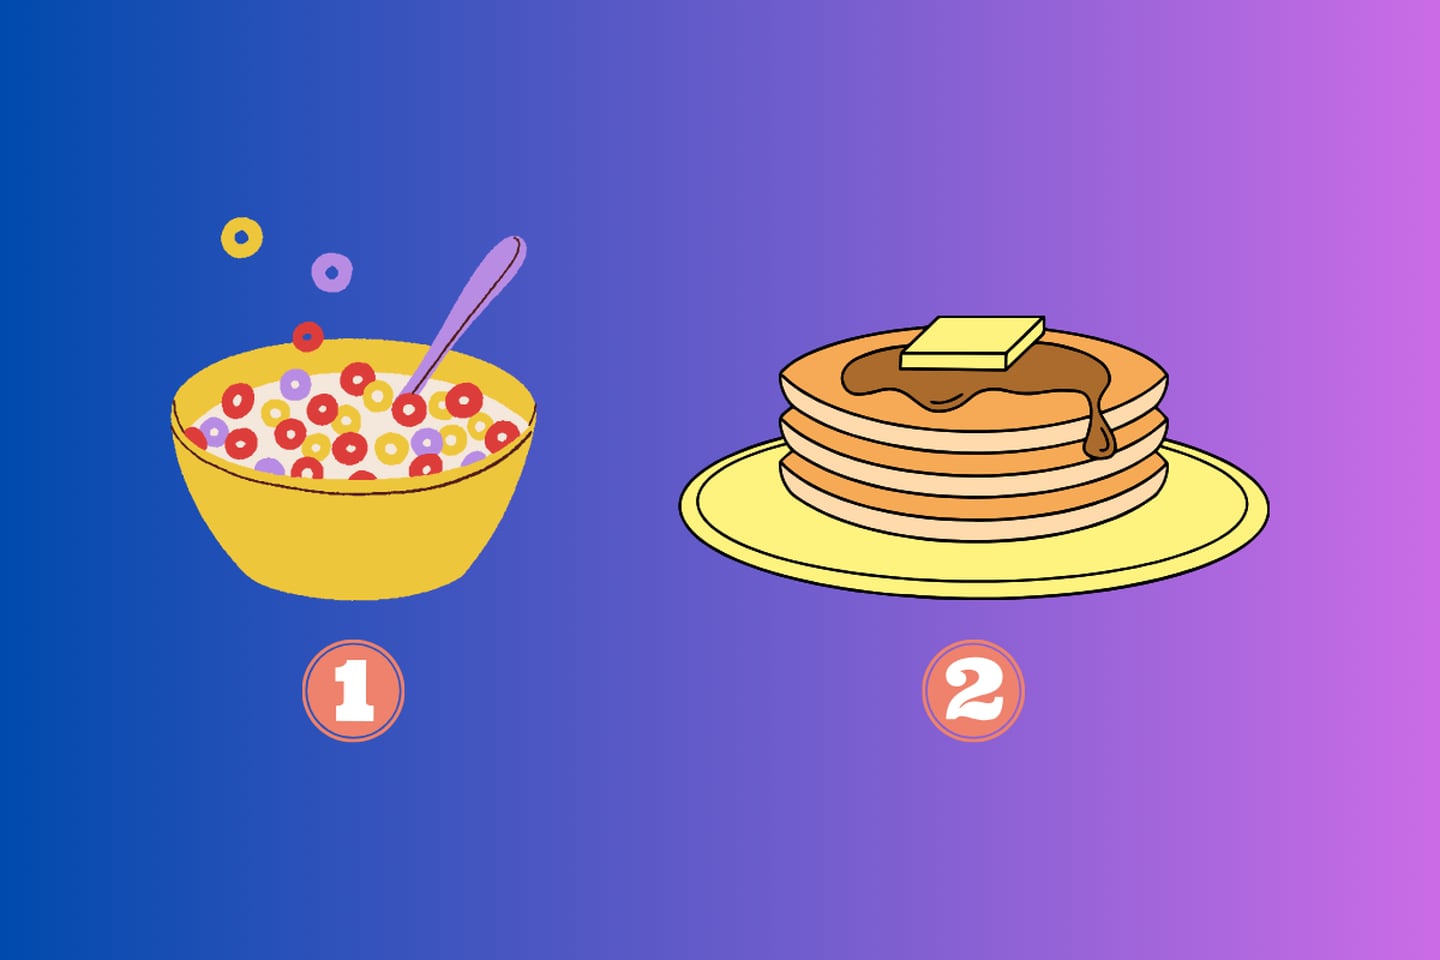 En este test de personalidad debes elegir entre dos opciones: cereal o pancakes.